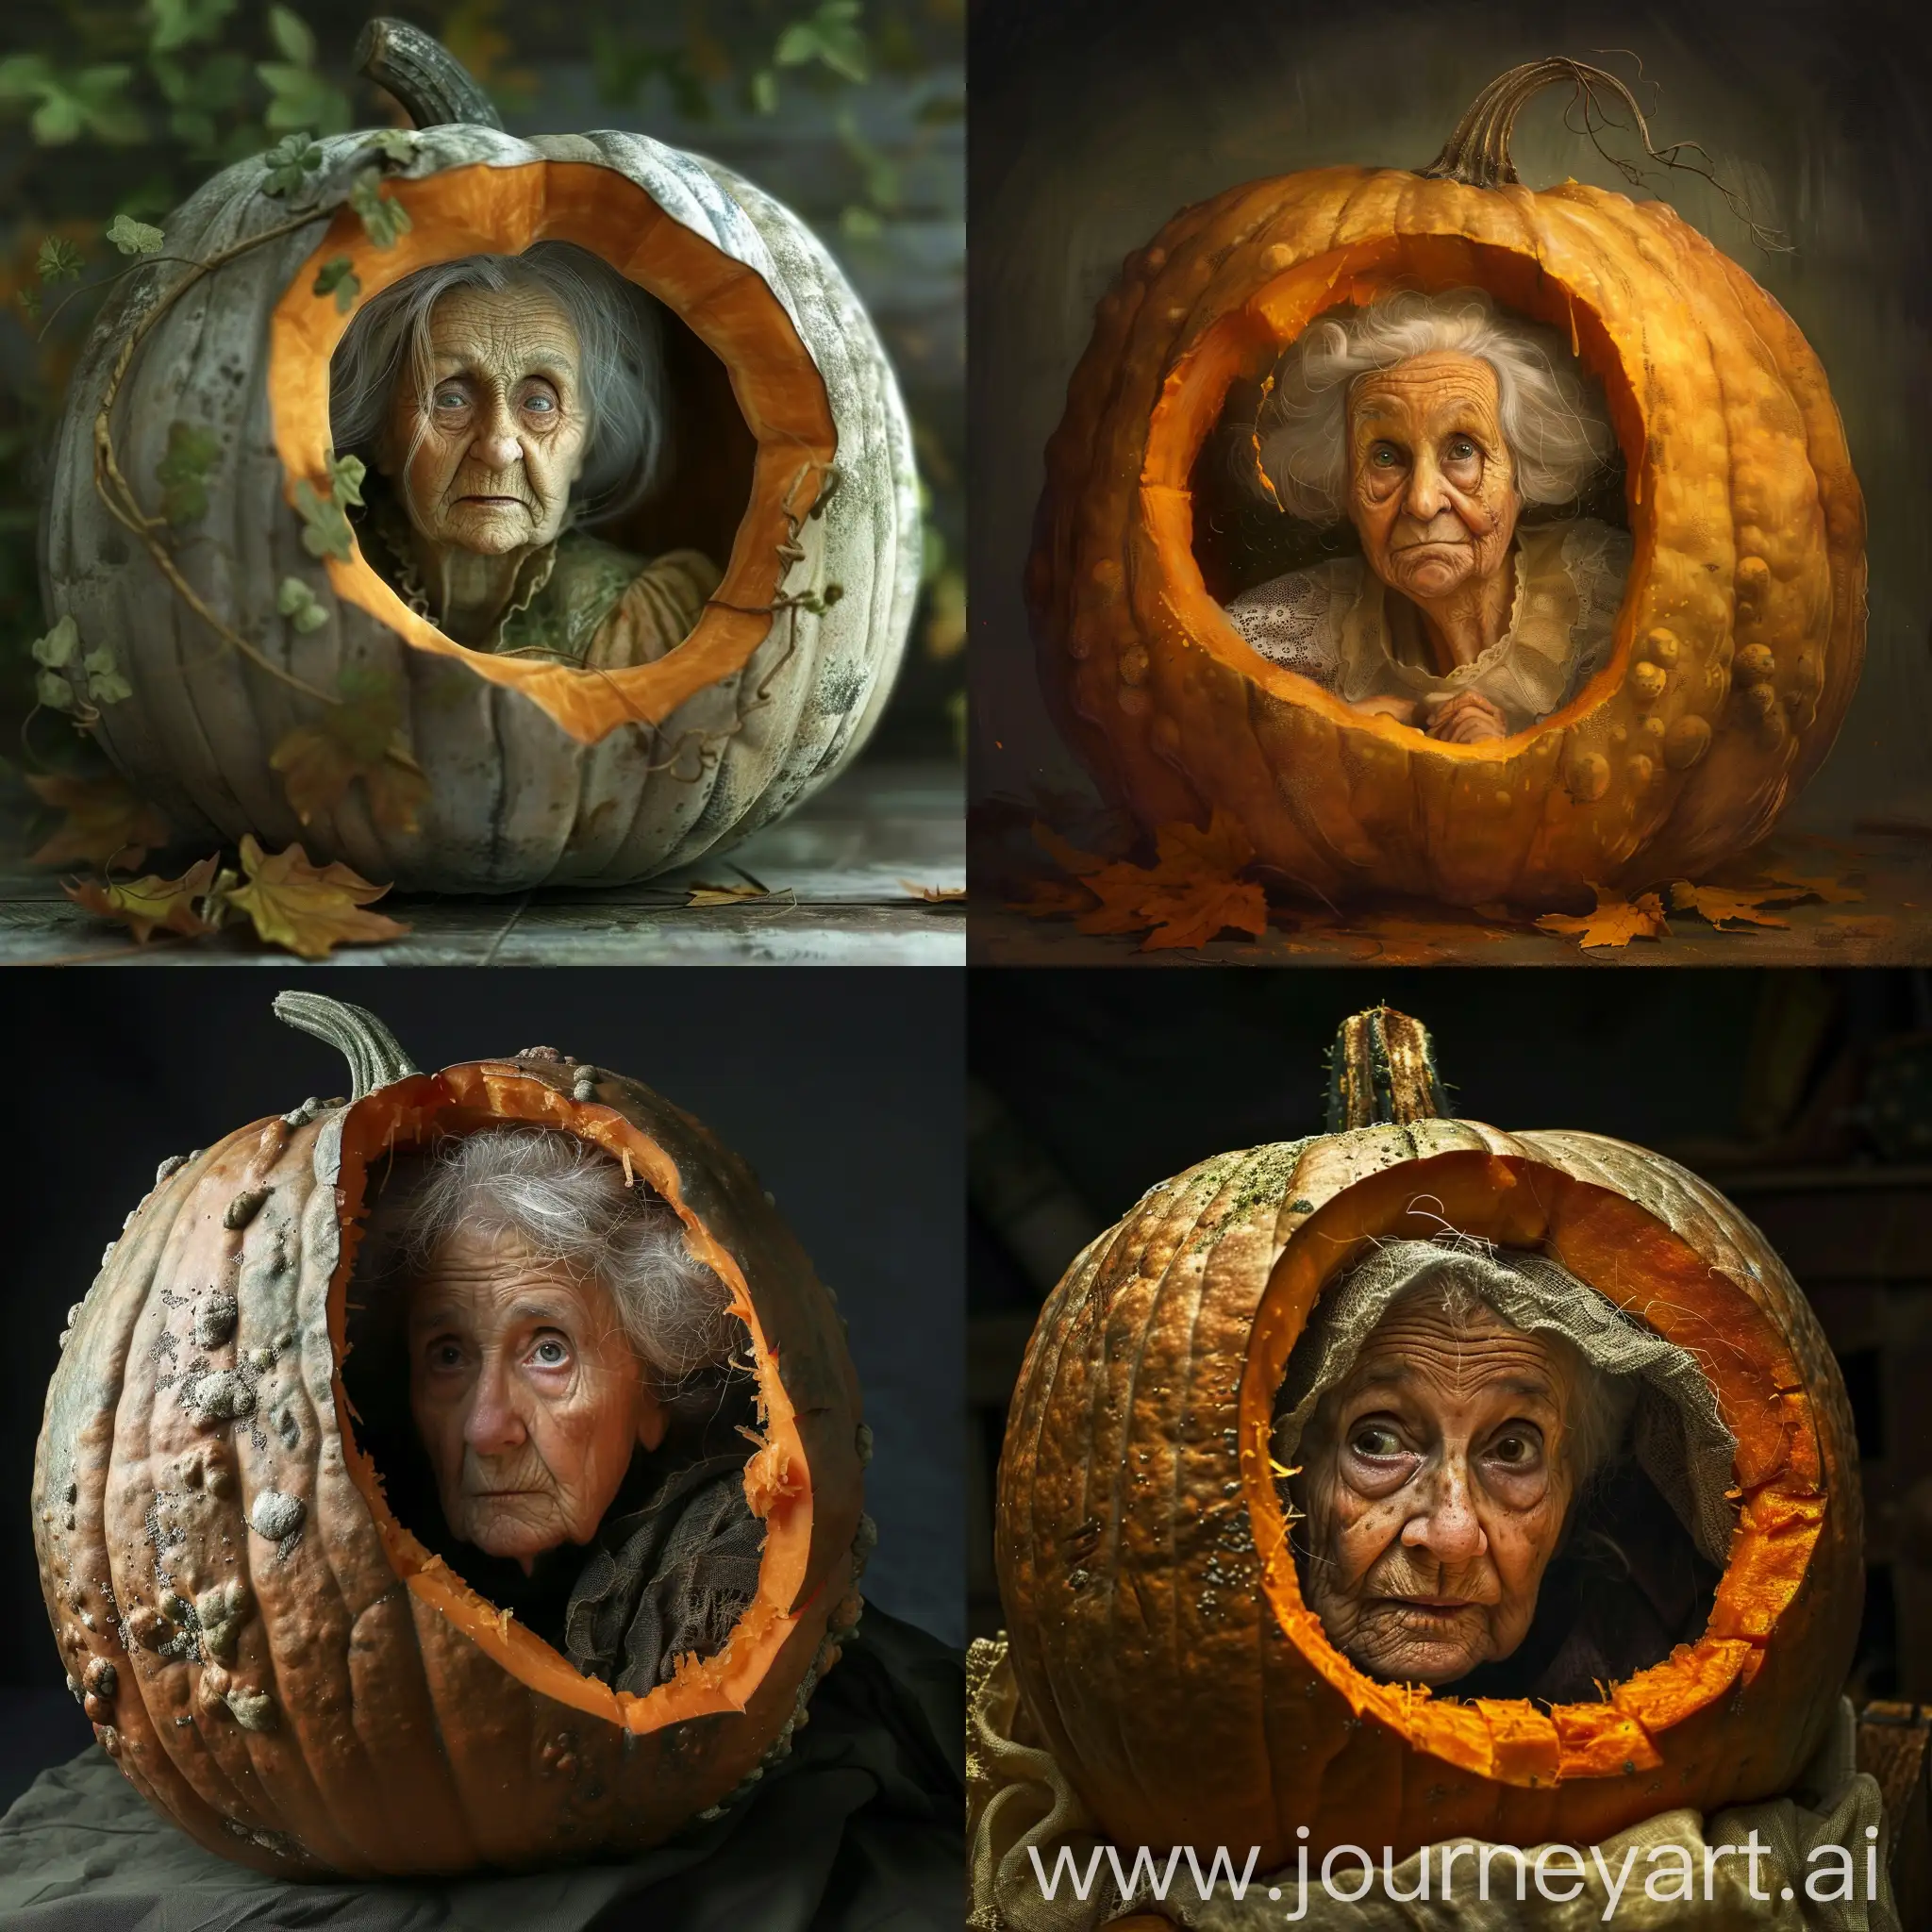 Old lady inside a pumpkin